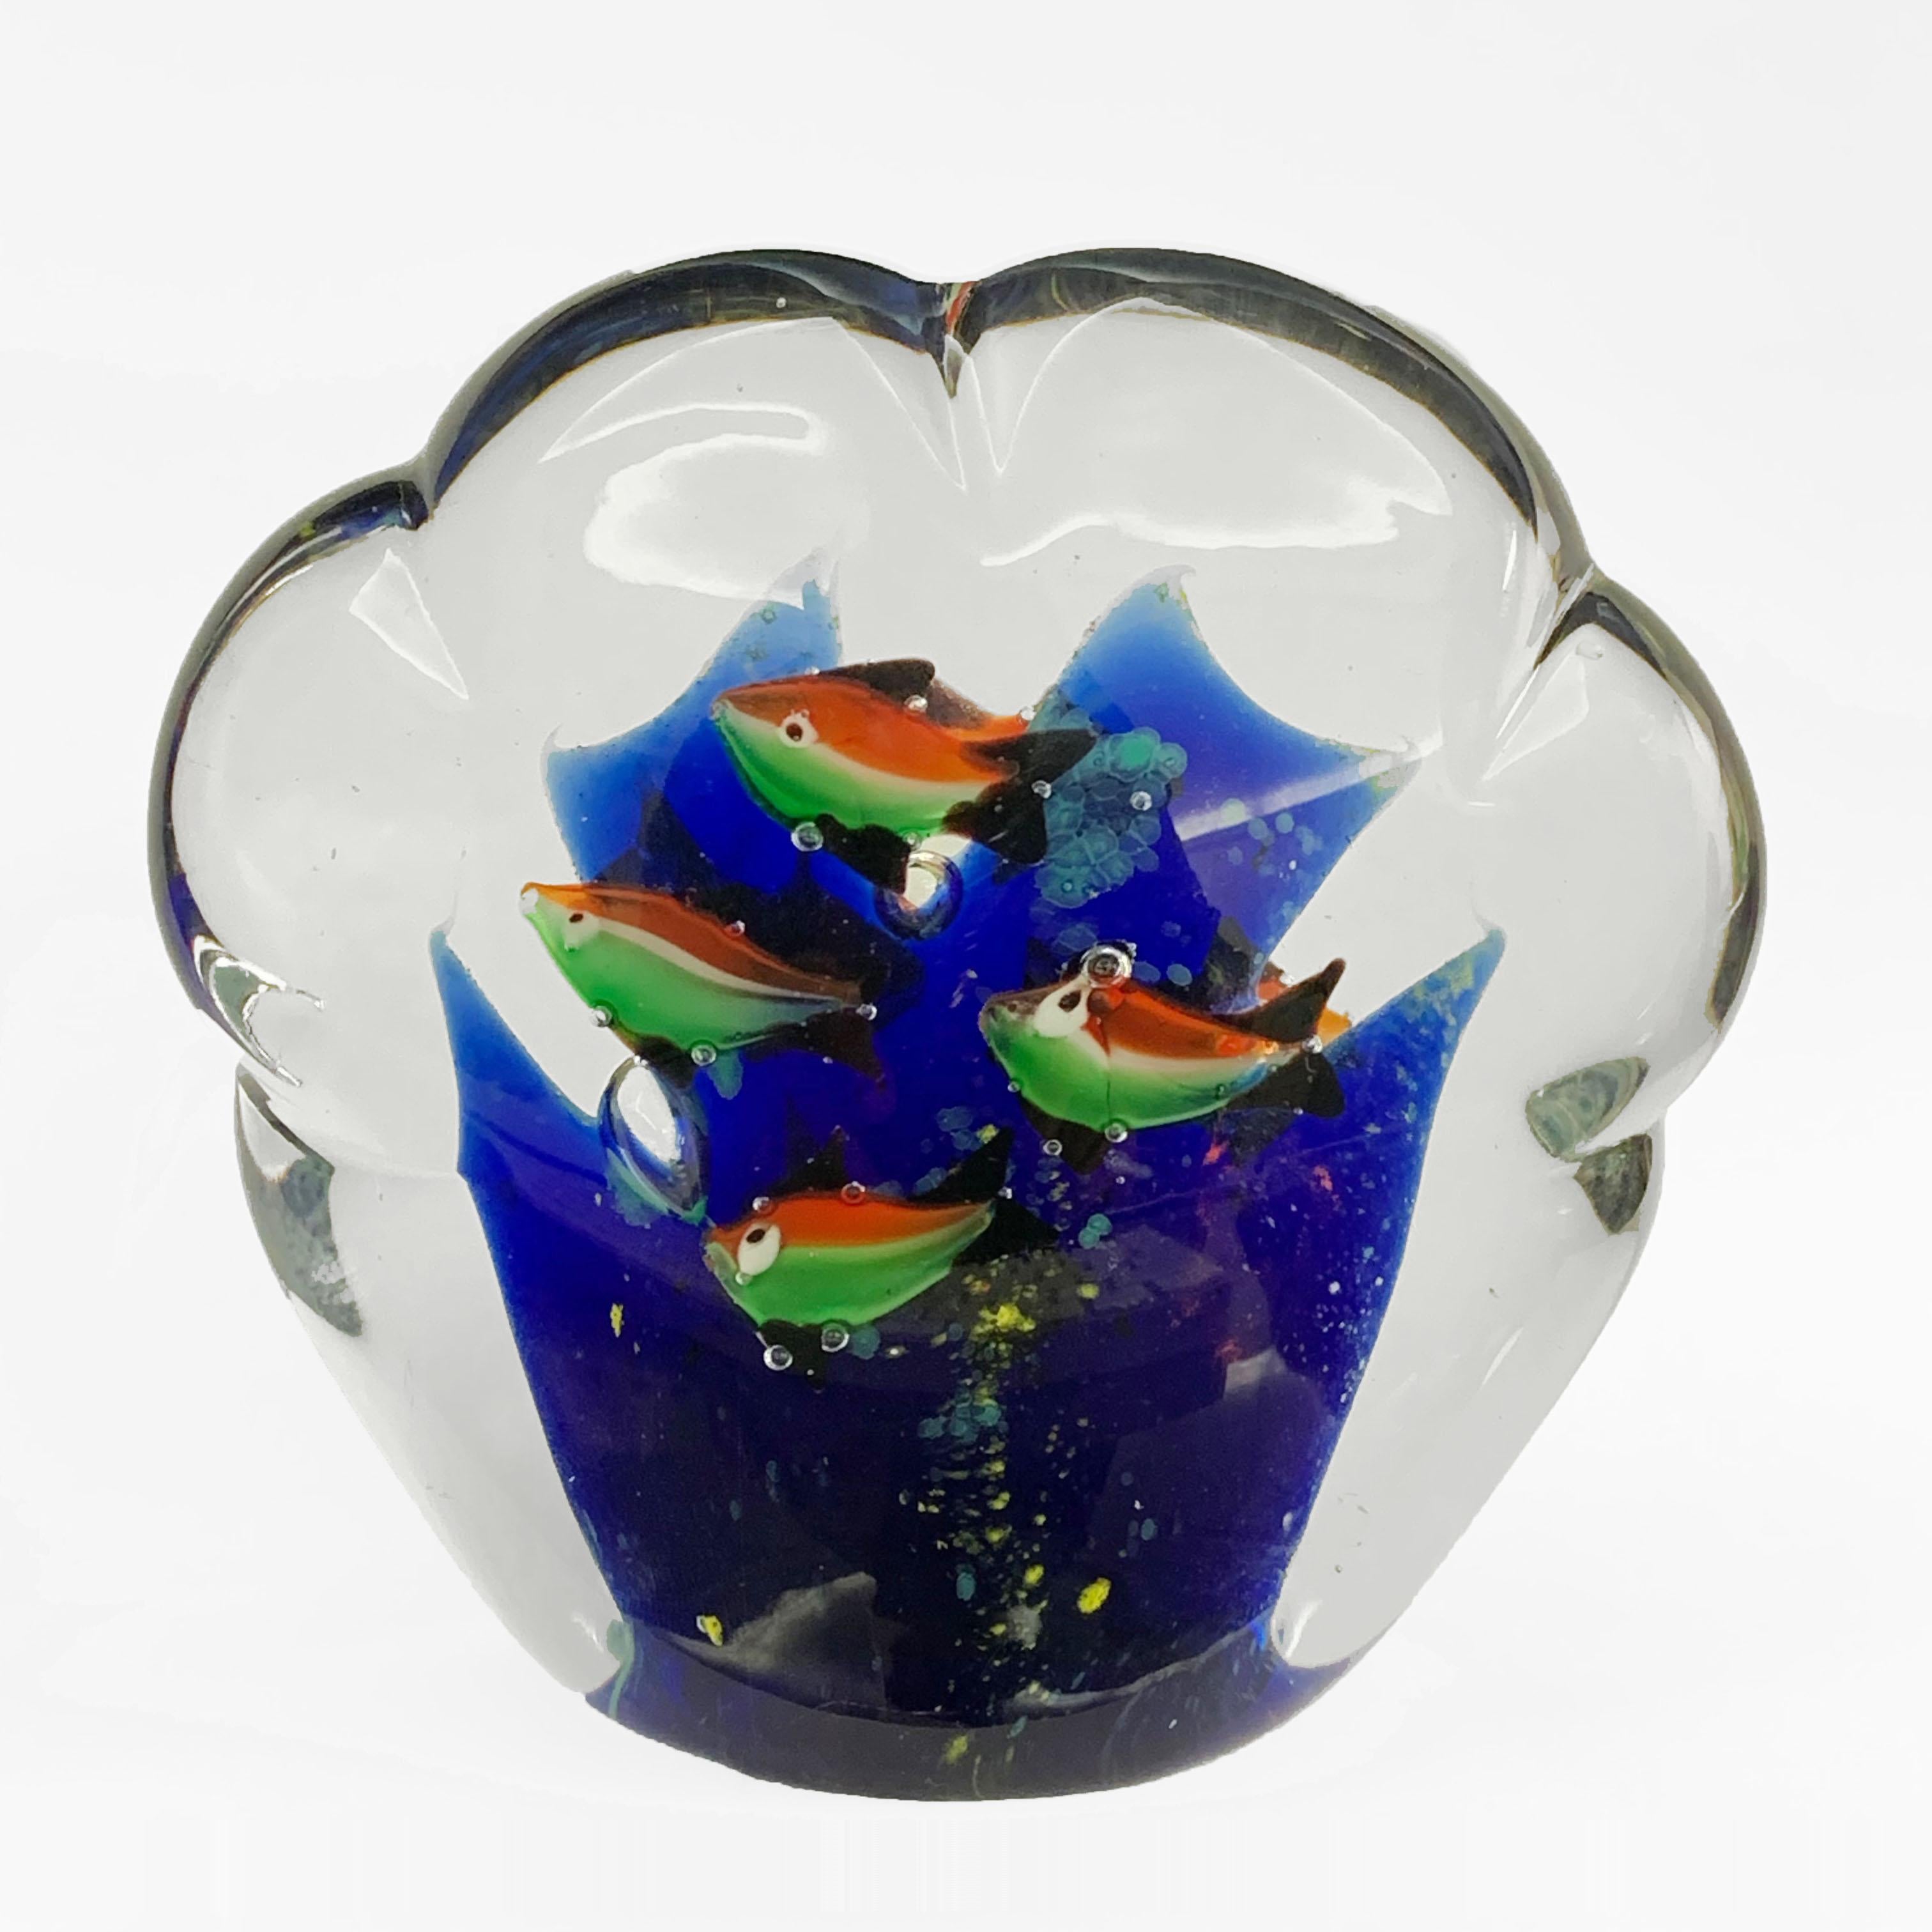 Beeindruckendes mundgeblasenes Muranoglas in hellem, blauem, weißem, rotem und grünem Glas. Nach dem Vorbild des Designers Alfredo Barbini und der Firma Cenedese.
Jede Seite hat vier dreifarbige Fische wie die italienische Flagge.